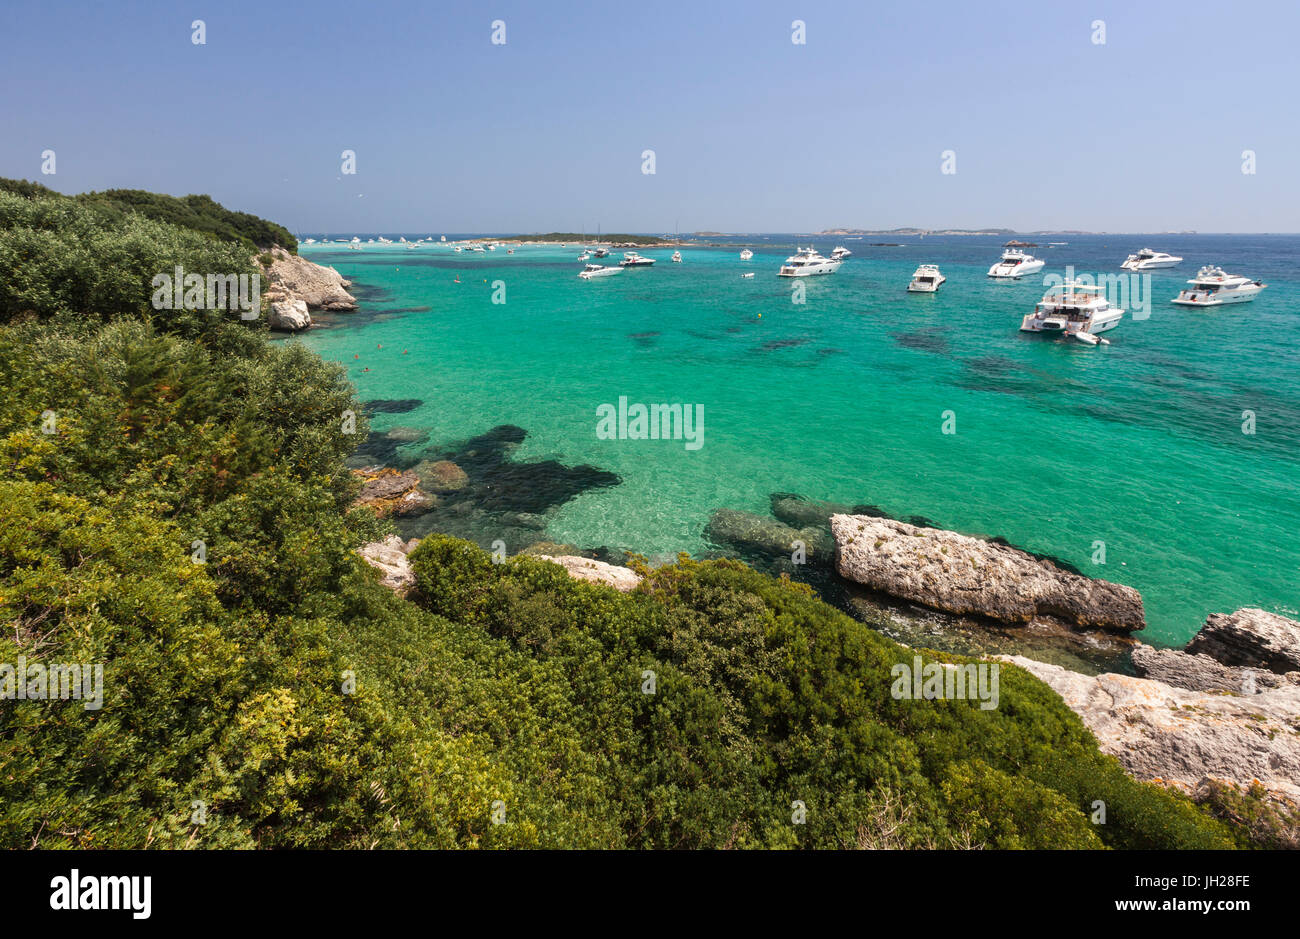 La vegetazione verde dell'entroterra fotogrammi alla velocità barche ormeggiate nel mare cristallino, Sperone, Bonifacio Corsica del Sud, Francia Foto Stock